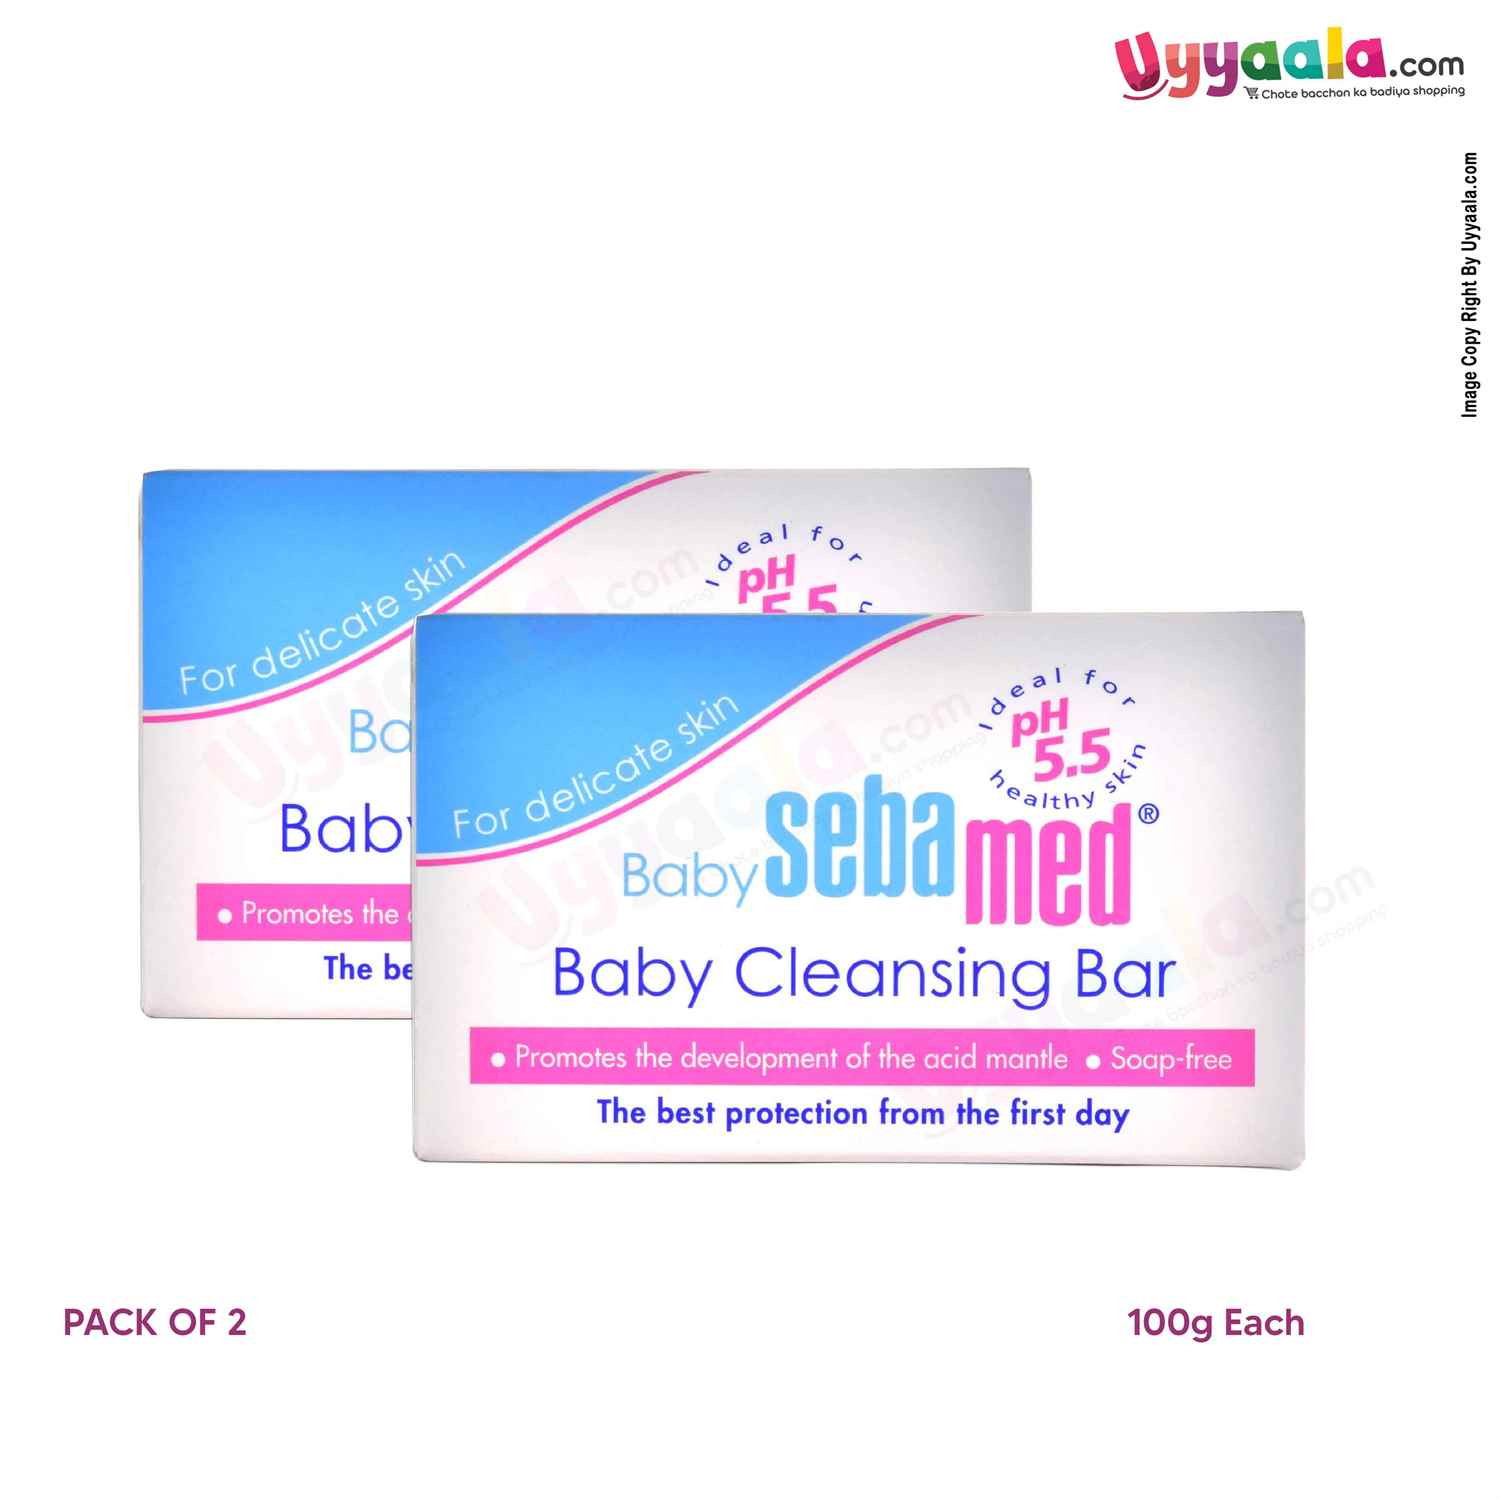 Sebamed Baby Cleansing Bar - 100 gm (pack of 2)